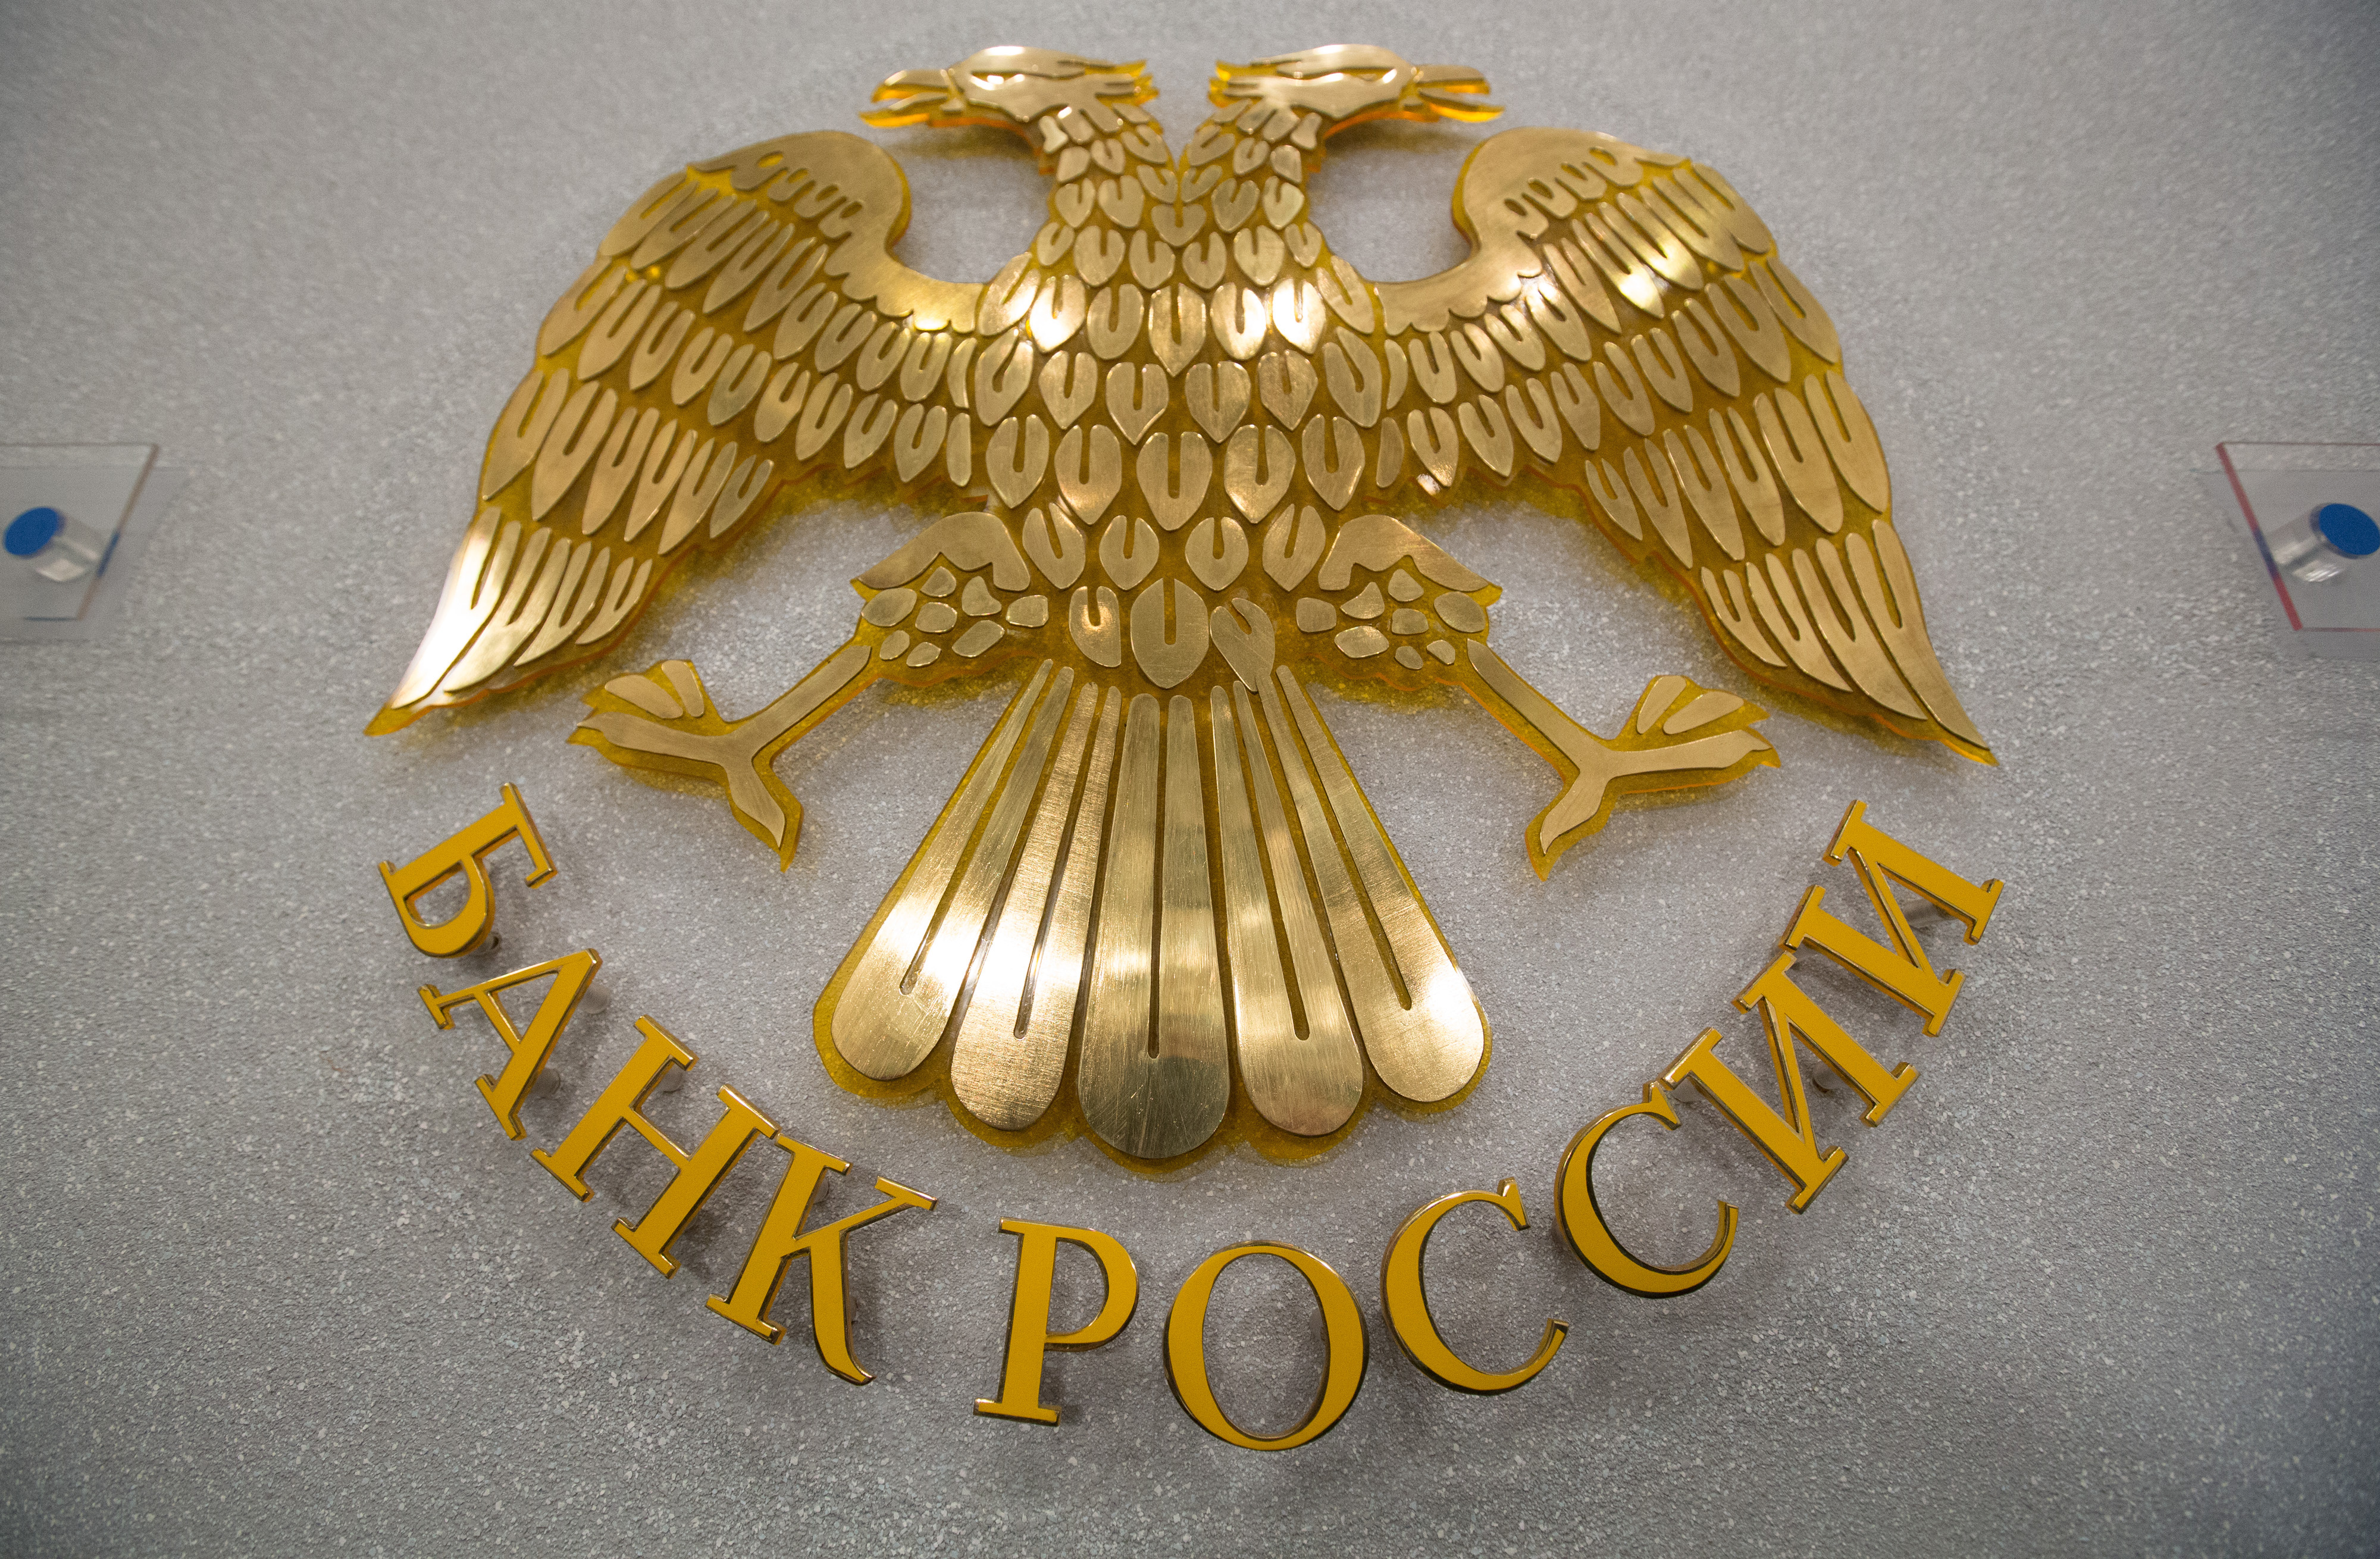 Еще одна форекс-компания получила отказ Банка России